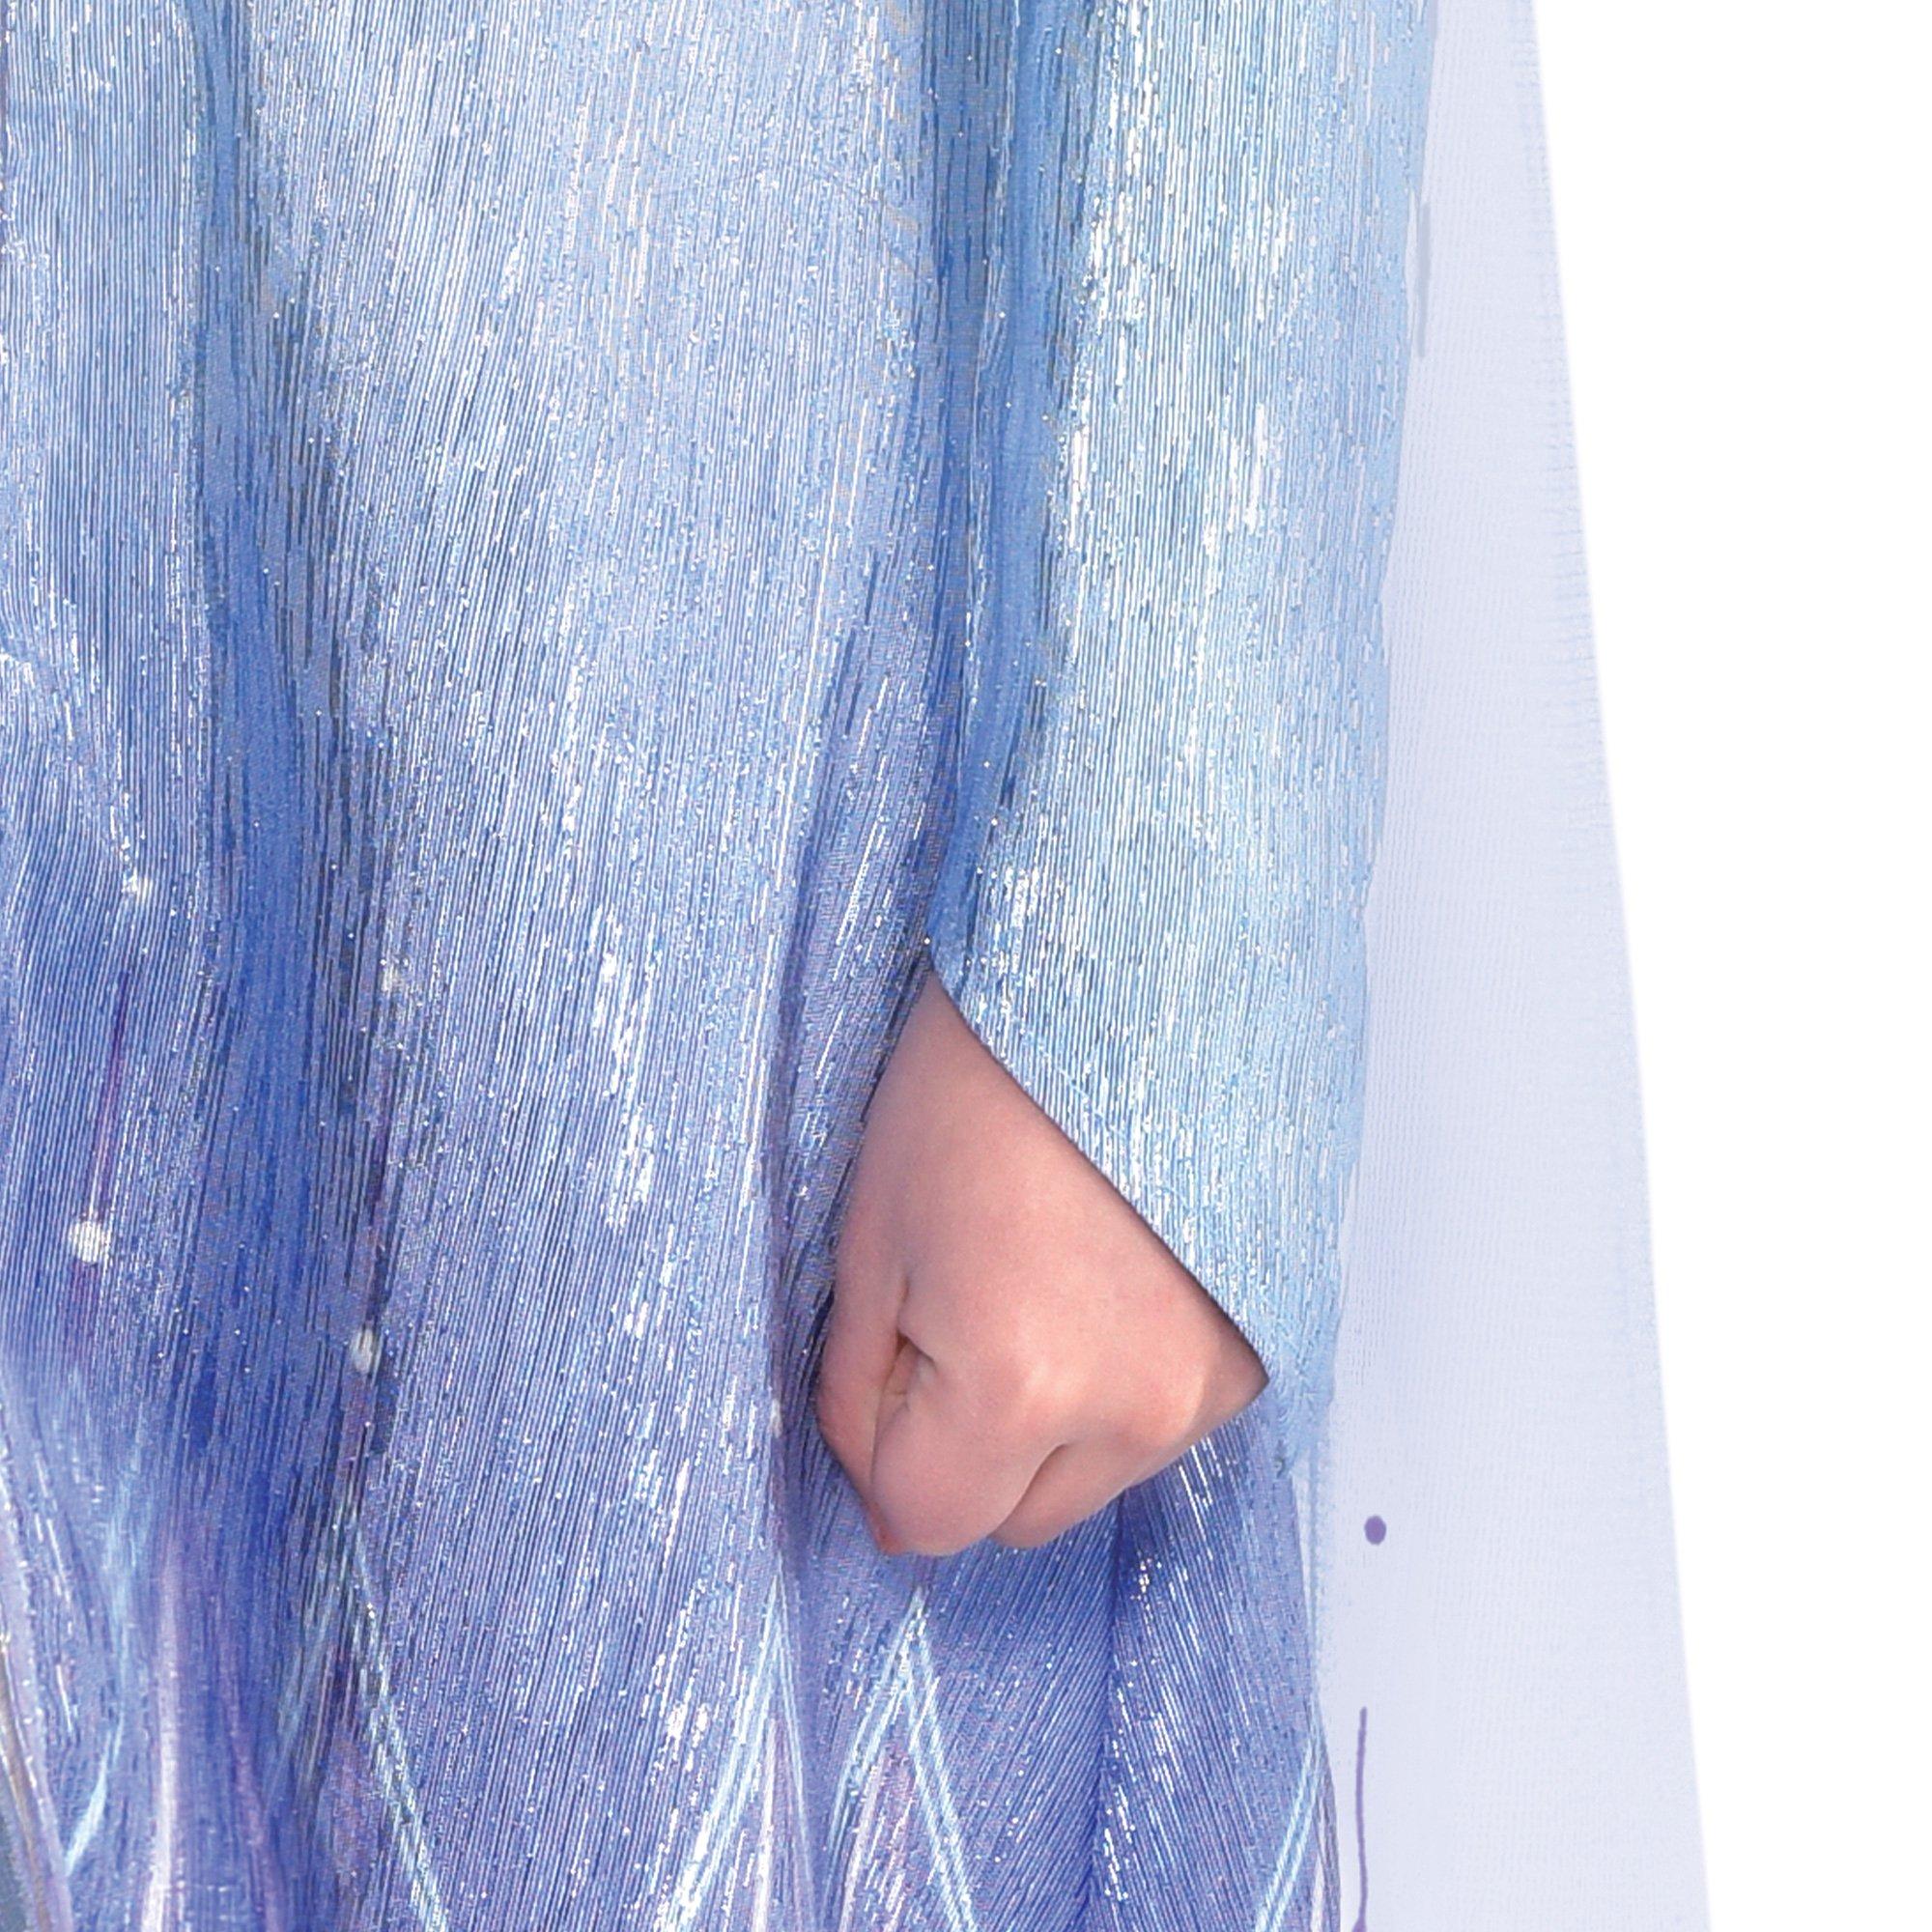 Kids' Act 2 Elsa Costume - Frozen 2